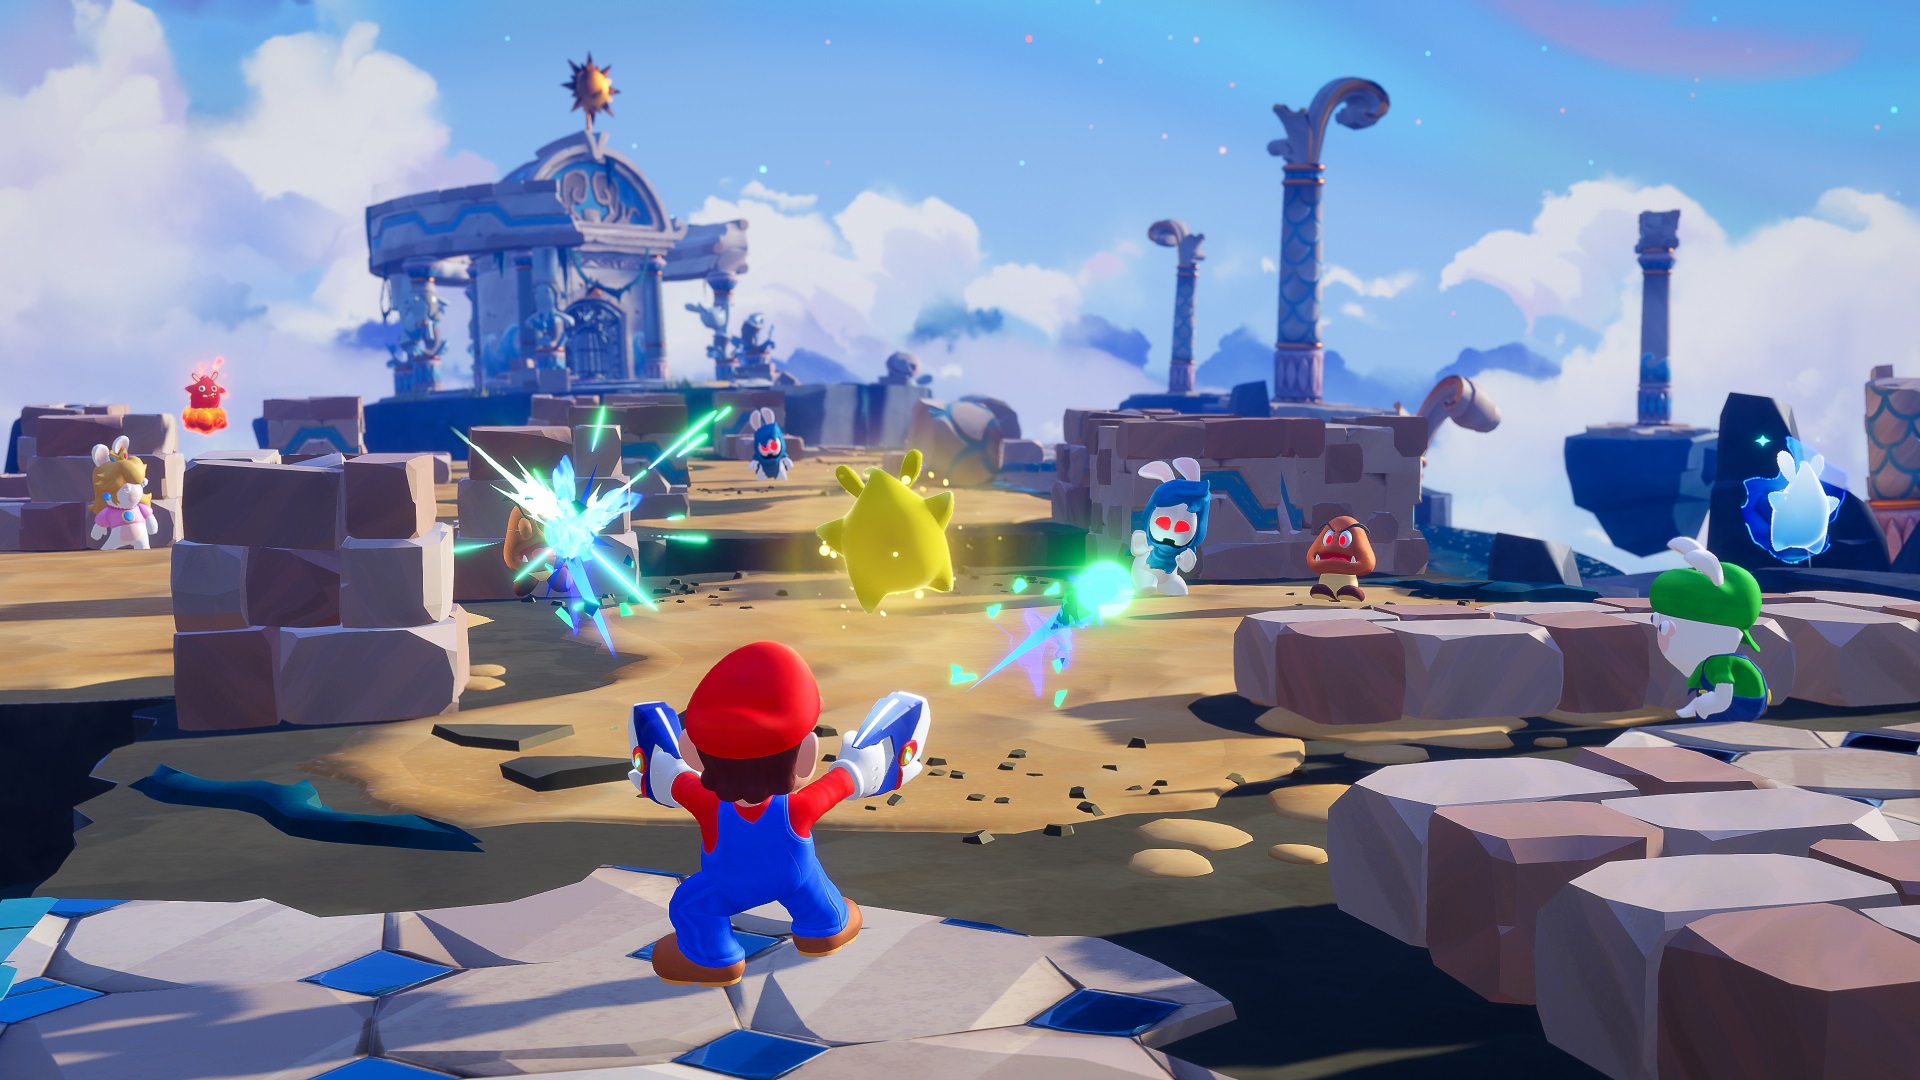 Captura de pantalla de Mario disparando a los enemigos en mario + rabbids chispas de esperanza.